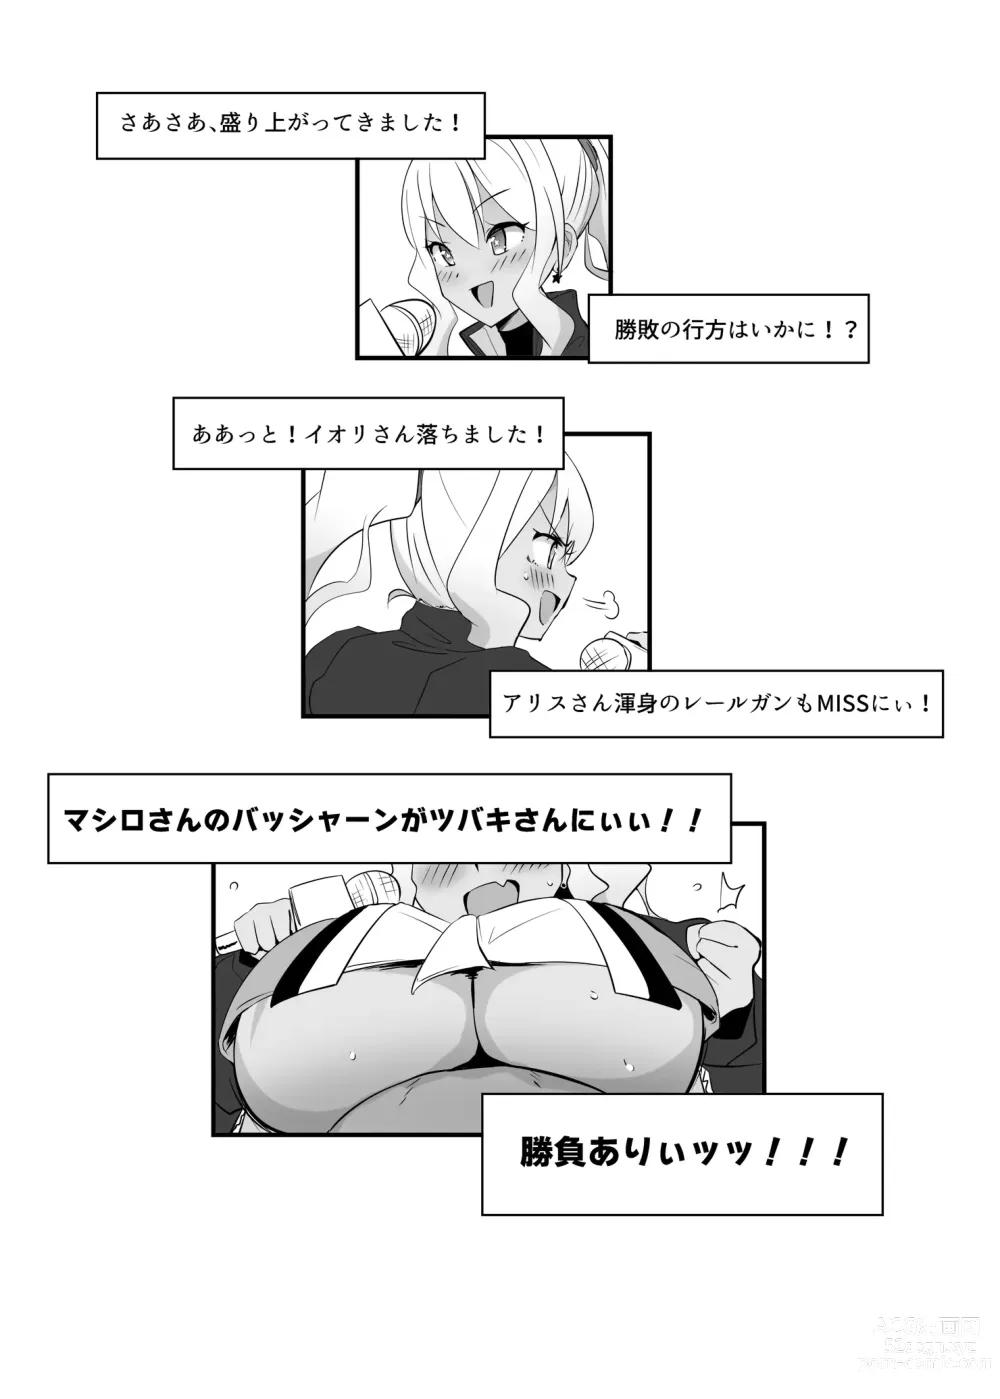 Page 25 of doujinshi Ako-chan Ganbaru. Kaijou Gentei Hon matome Web Koukai-ban